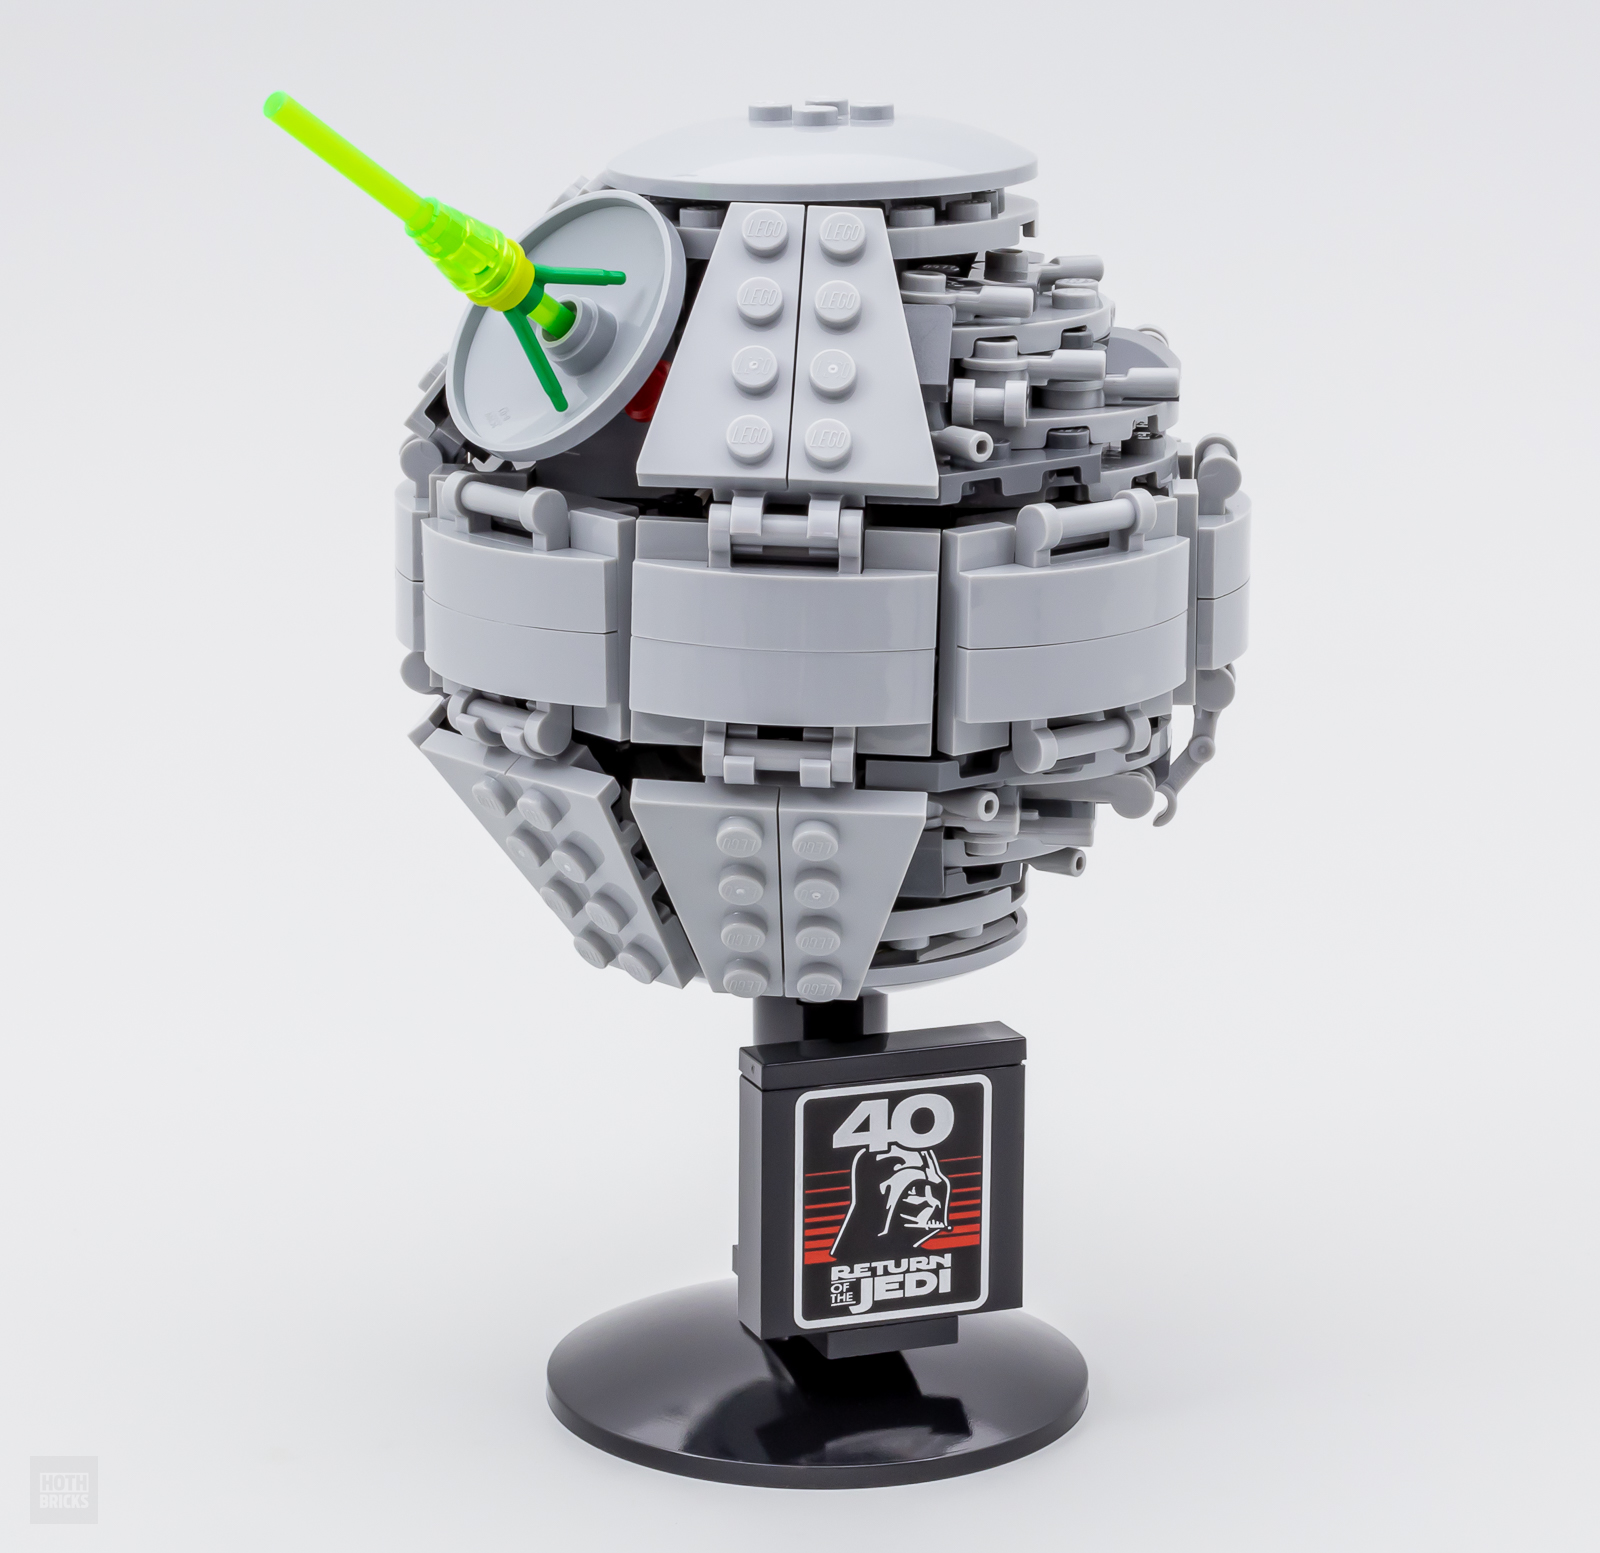 Recensione LEGO Star Wars - Morte Nera II (40591) - Mattonito